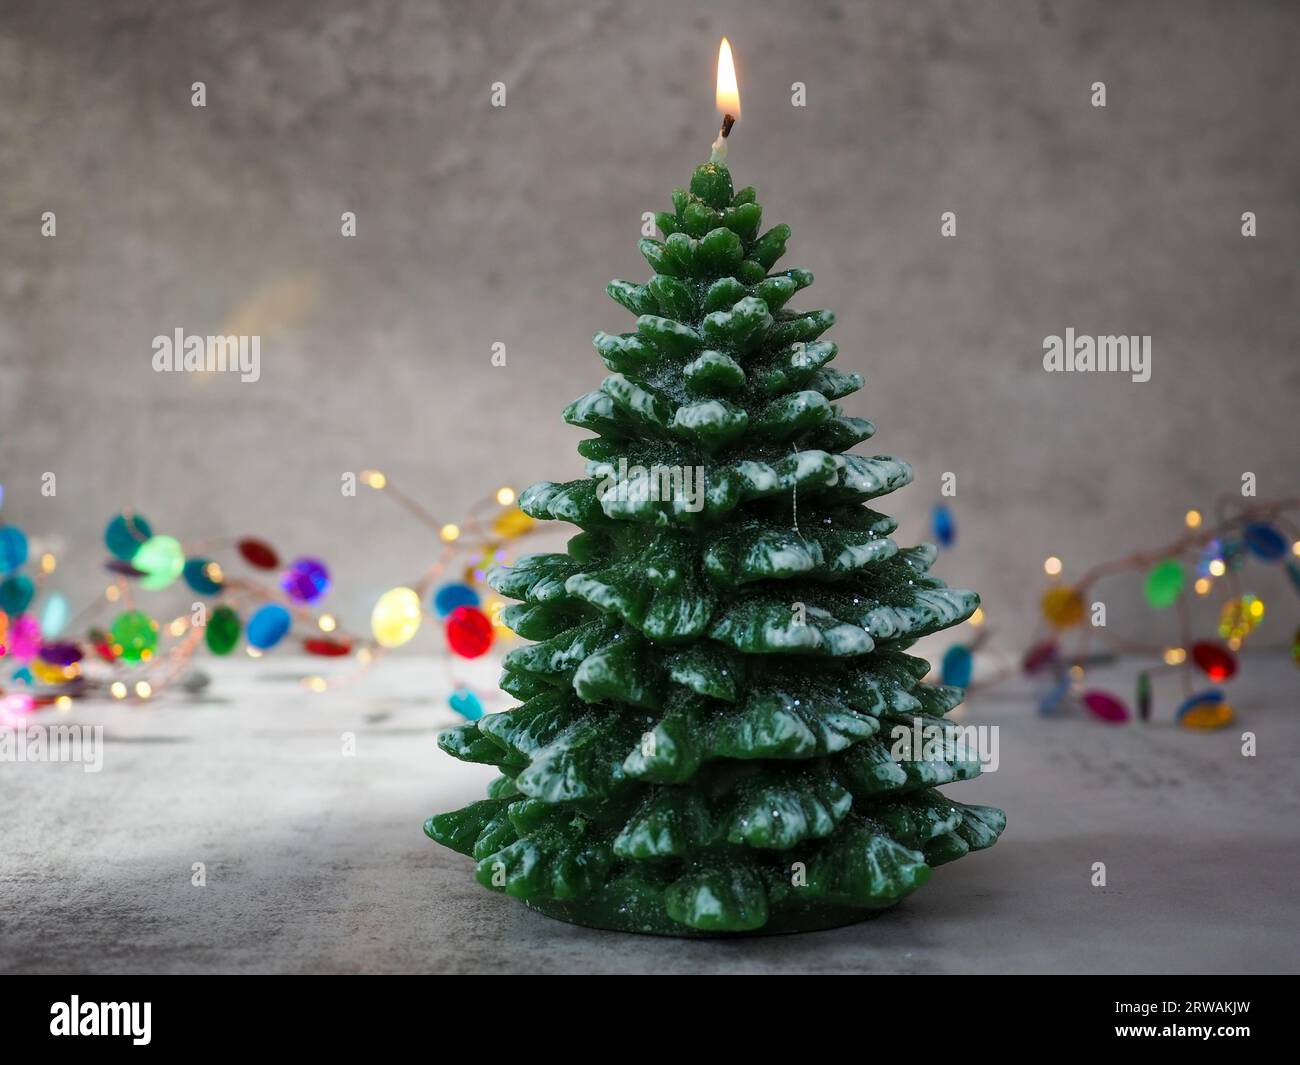 Natale sobrio immagini e fotografie stock ad alta risoluzione - Alamy